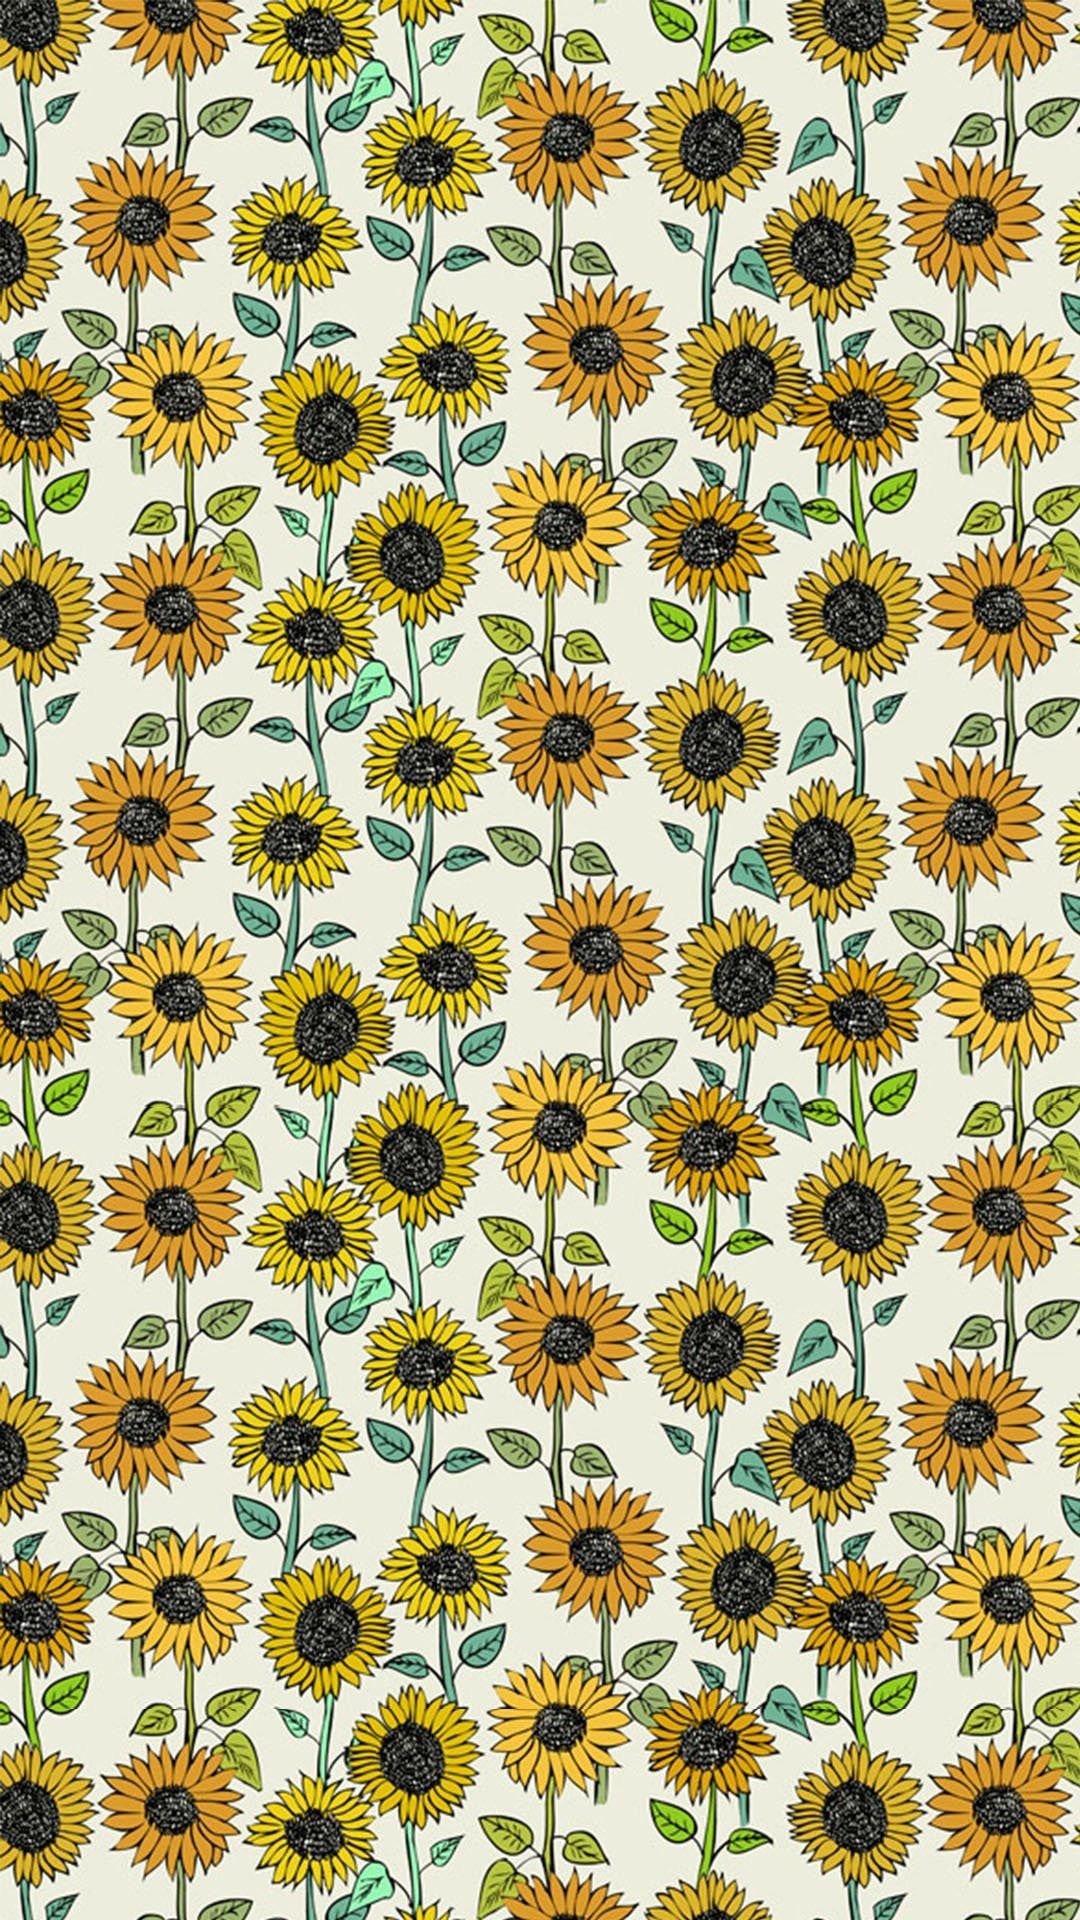 Lockscreen  Sunflower  Sunflower wallpaper Sunflower iphone wallpaper  Sunflower photography